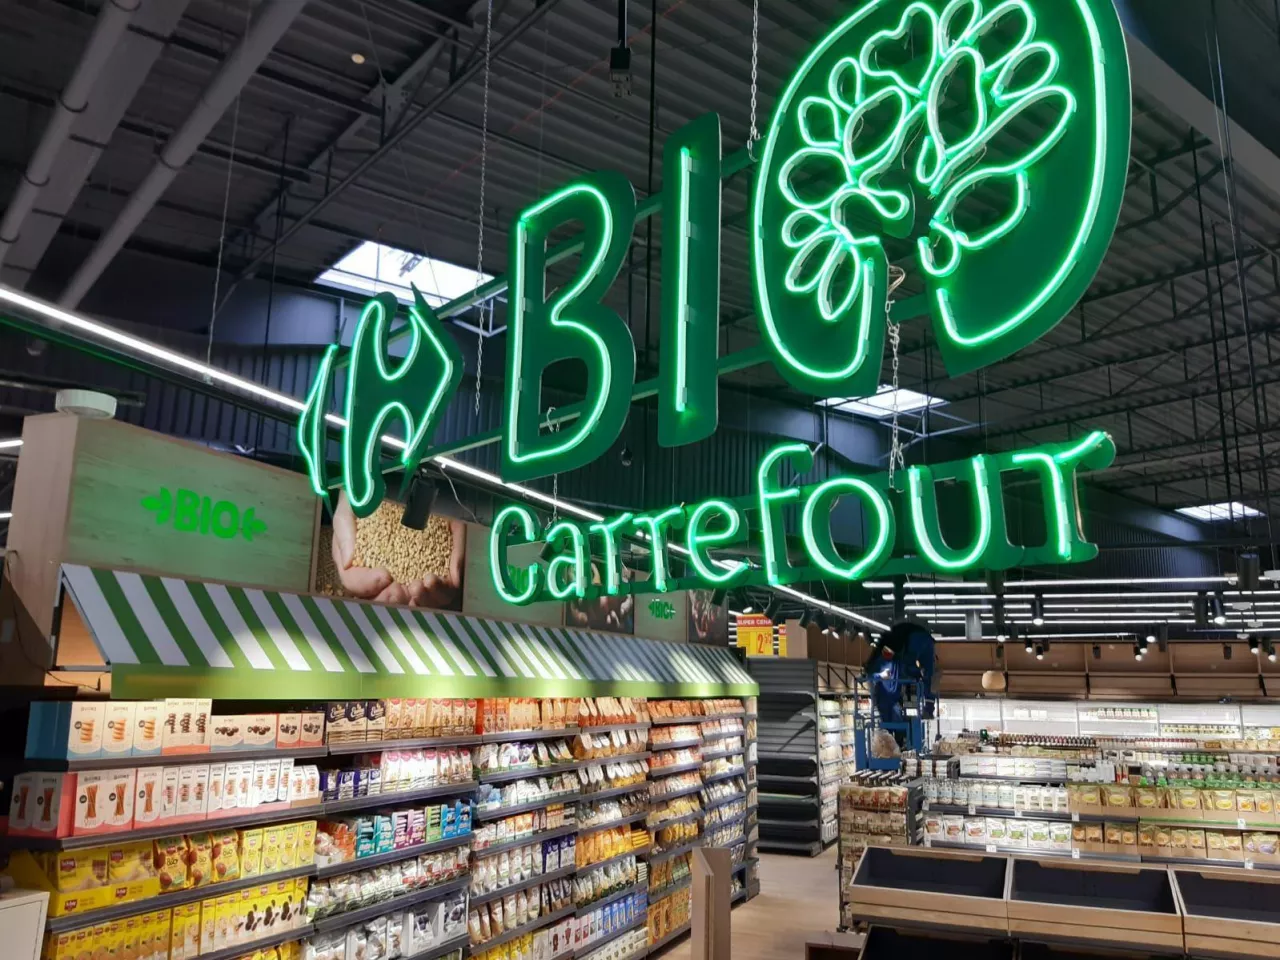 Sklep Carrefour Bio wewnątrz hipermarketu Carrefour we Wrocławiu (Carrefour Polska)